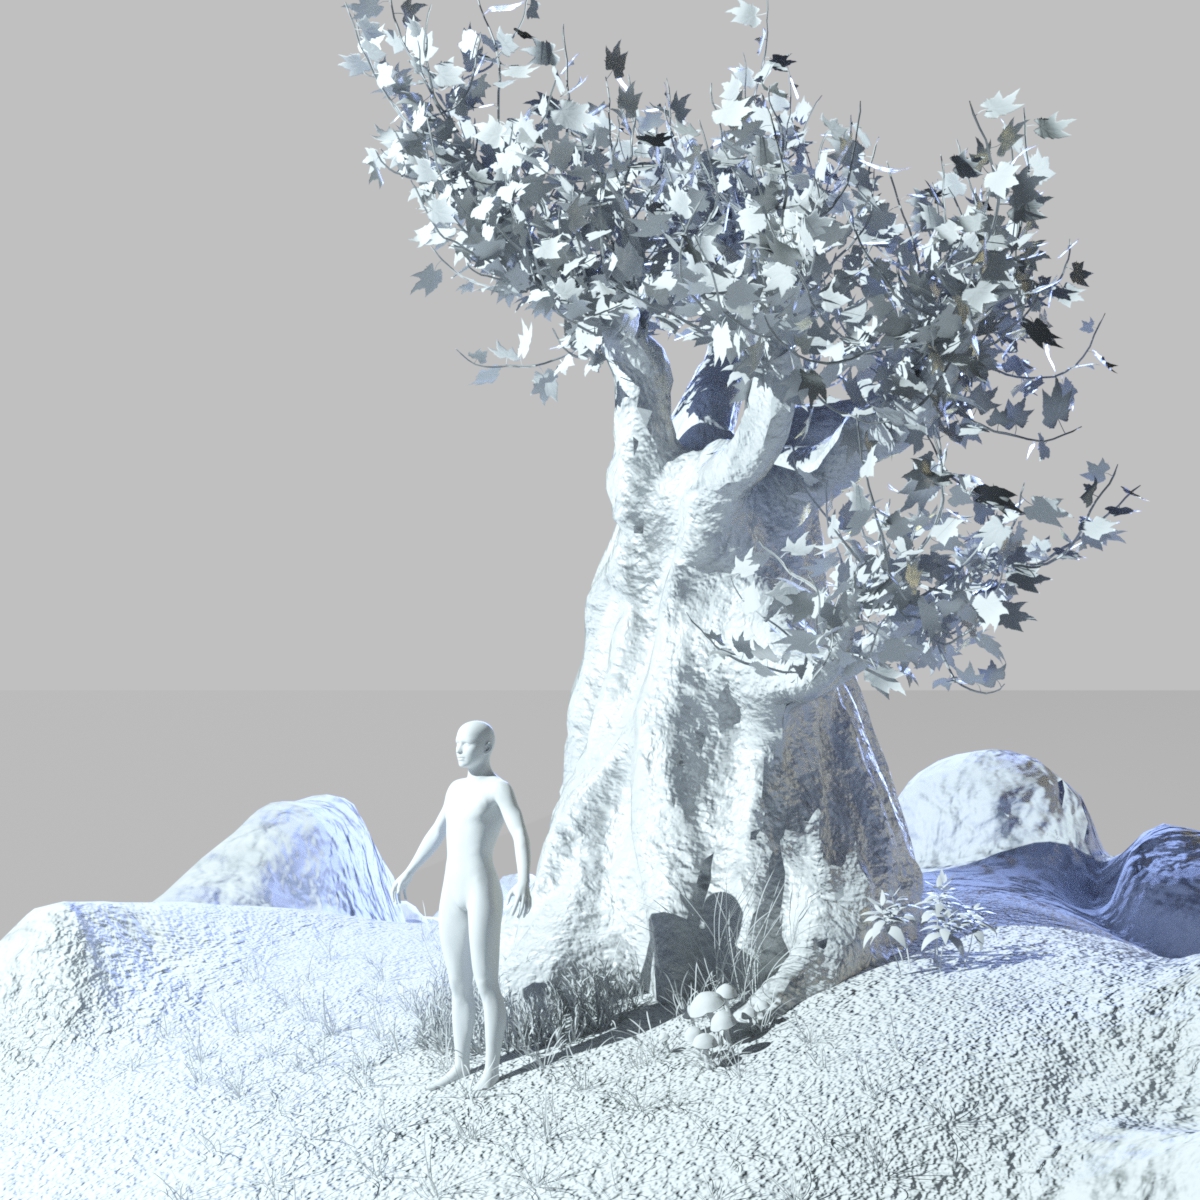 Millennial Tree by: JeffersonAFGendragon3D, 3D Models by Daz 3D